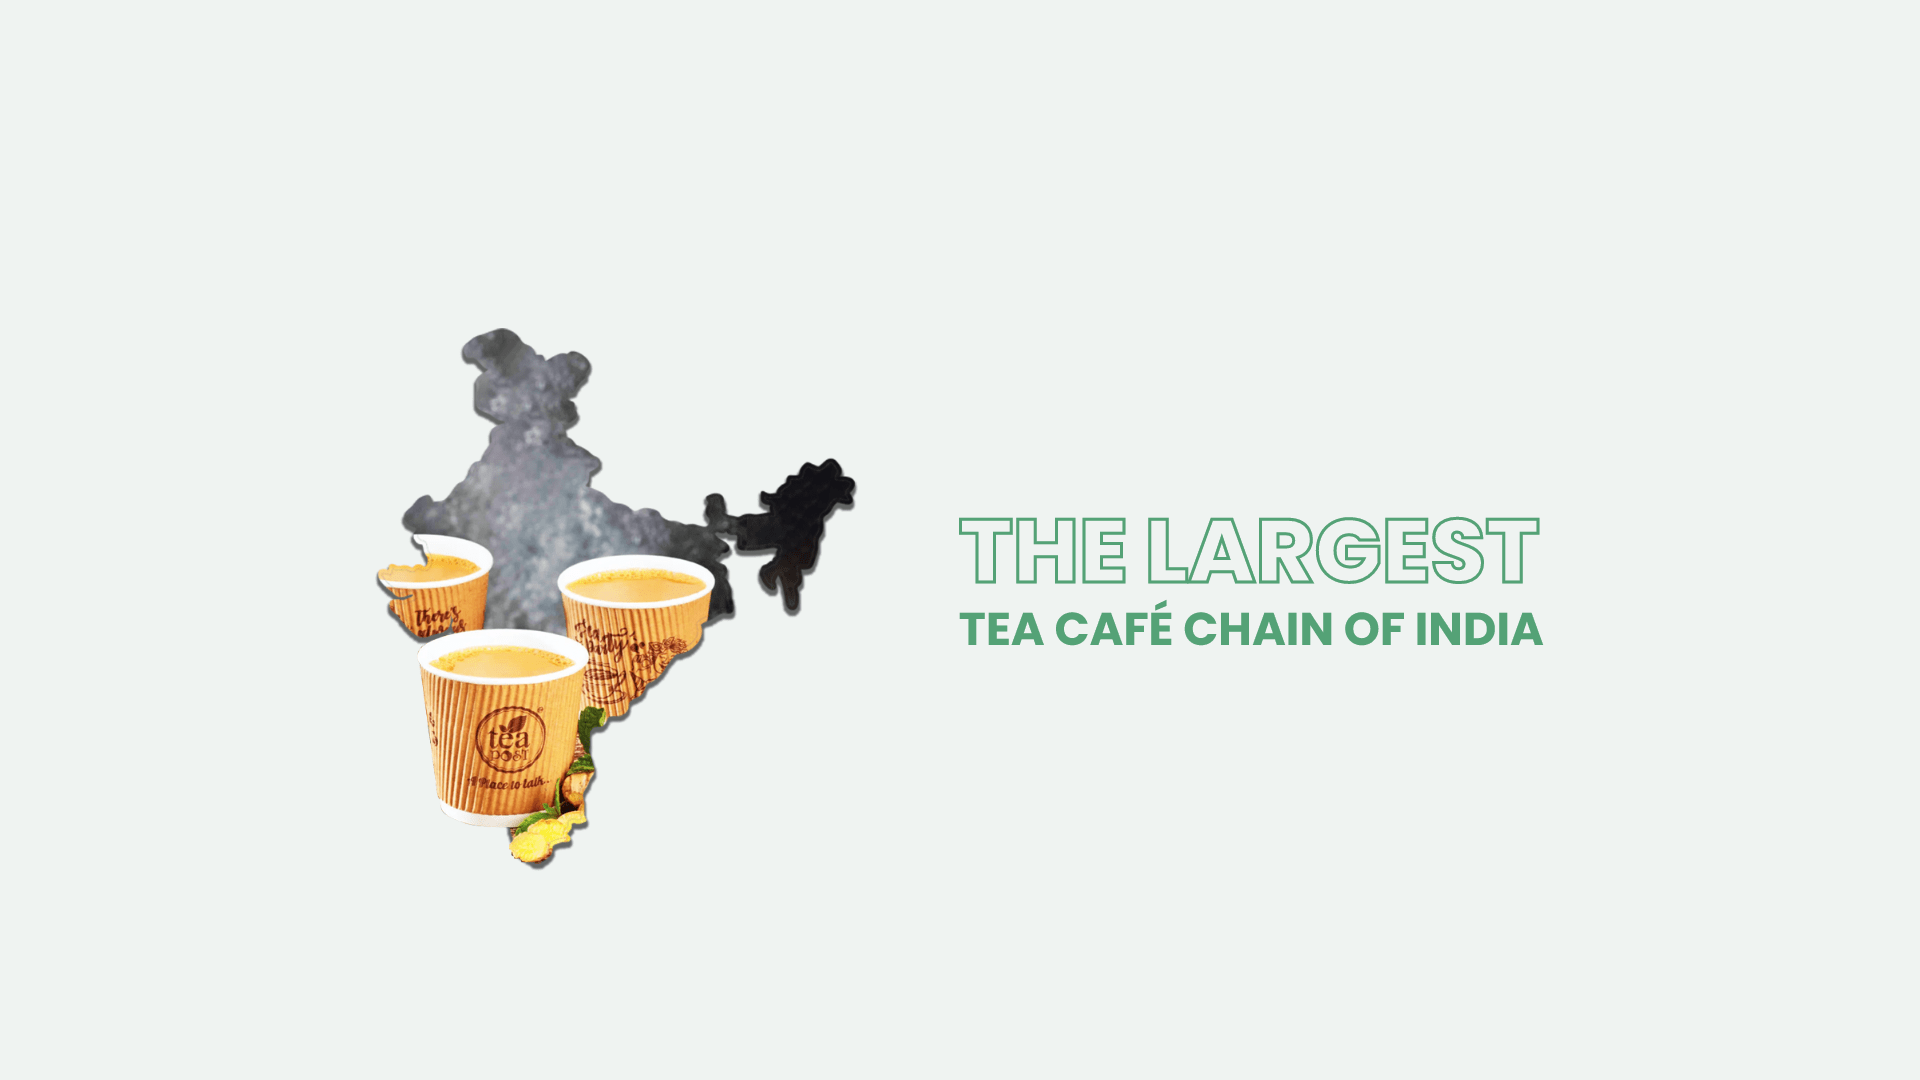 India’s largest tea café chain